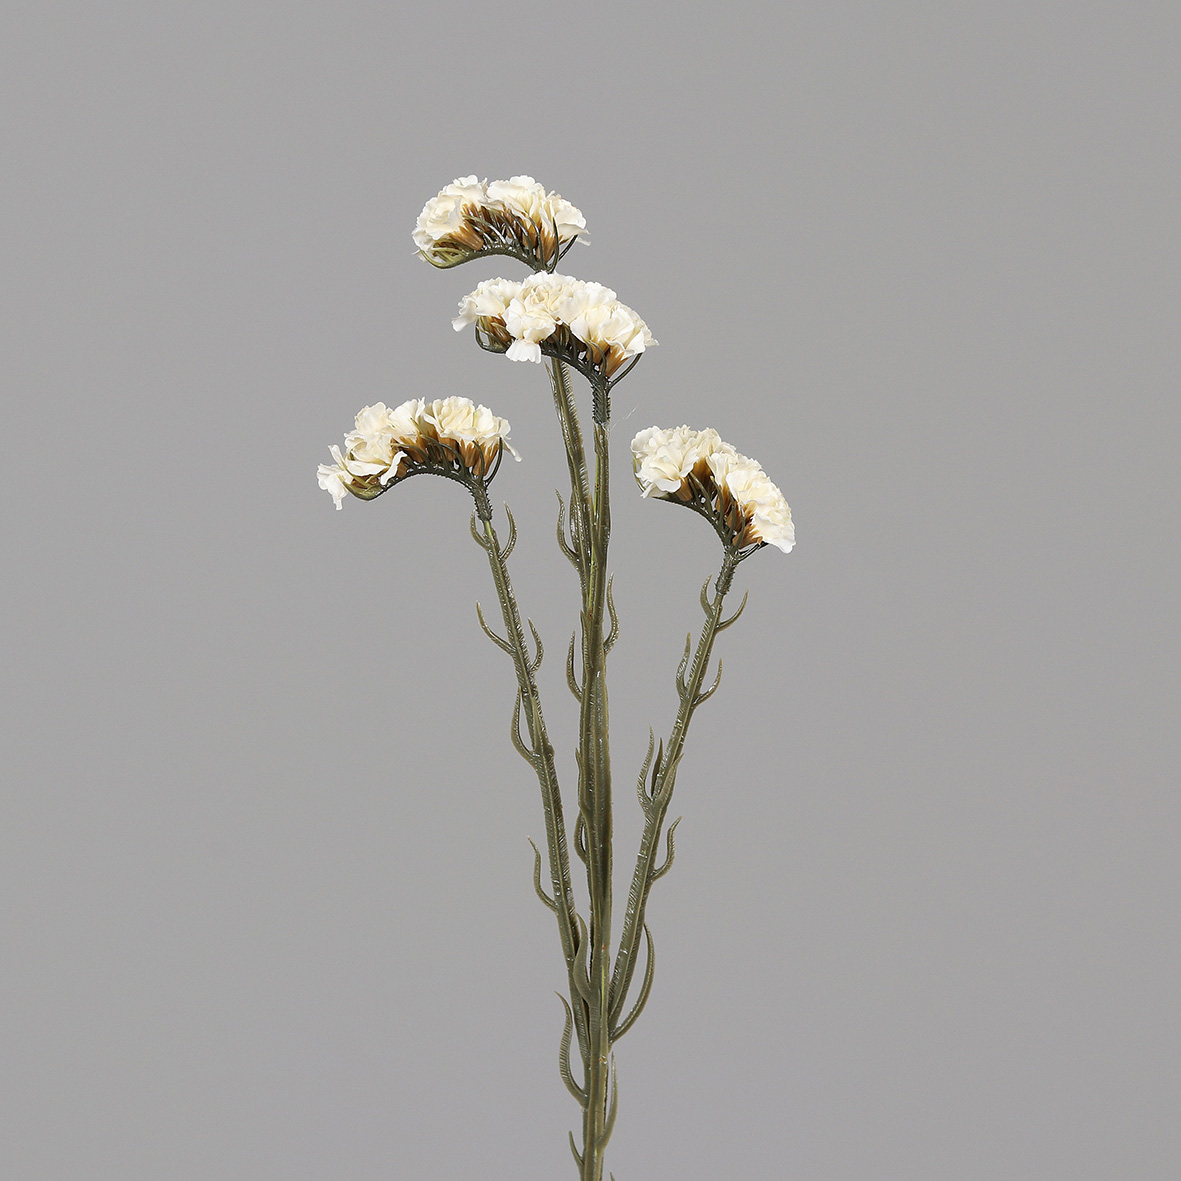 Statice Sinuata / Strandflieder 62cm weiß-creme DP Kunstblumen künstliche Blumen